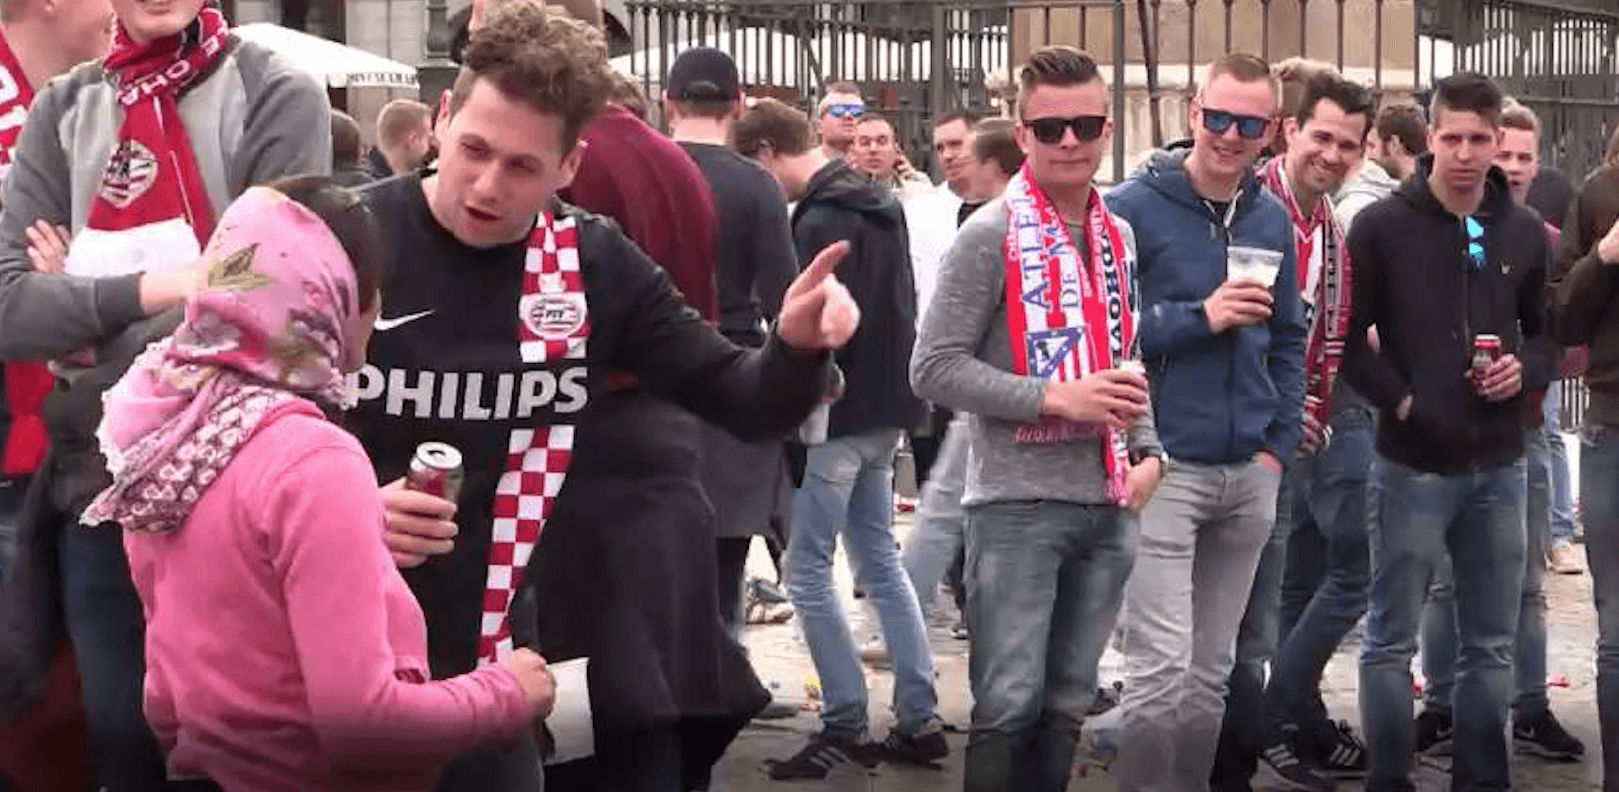 Der Fall der niederländischen Fans, wenn die Masse das Böse verstärkt / Psychologie